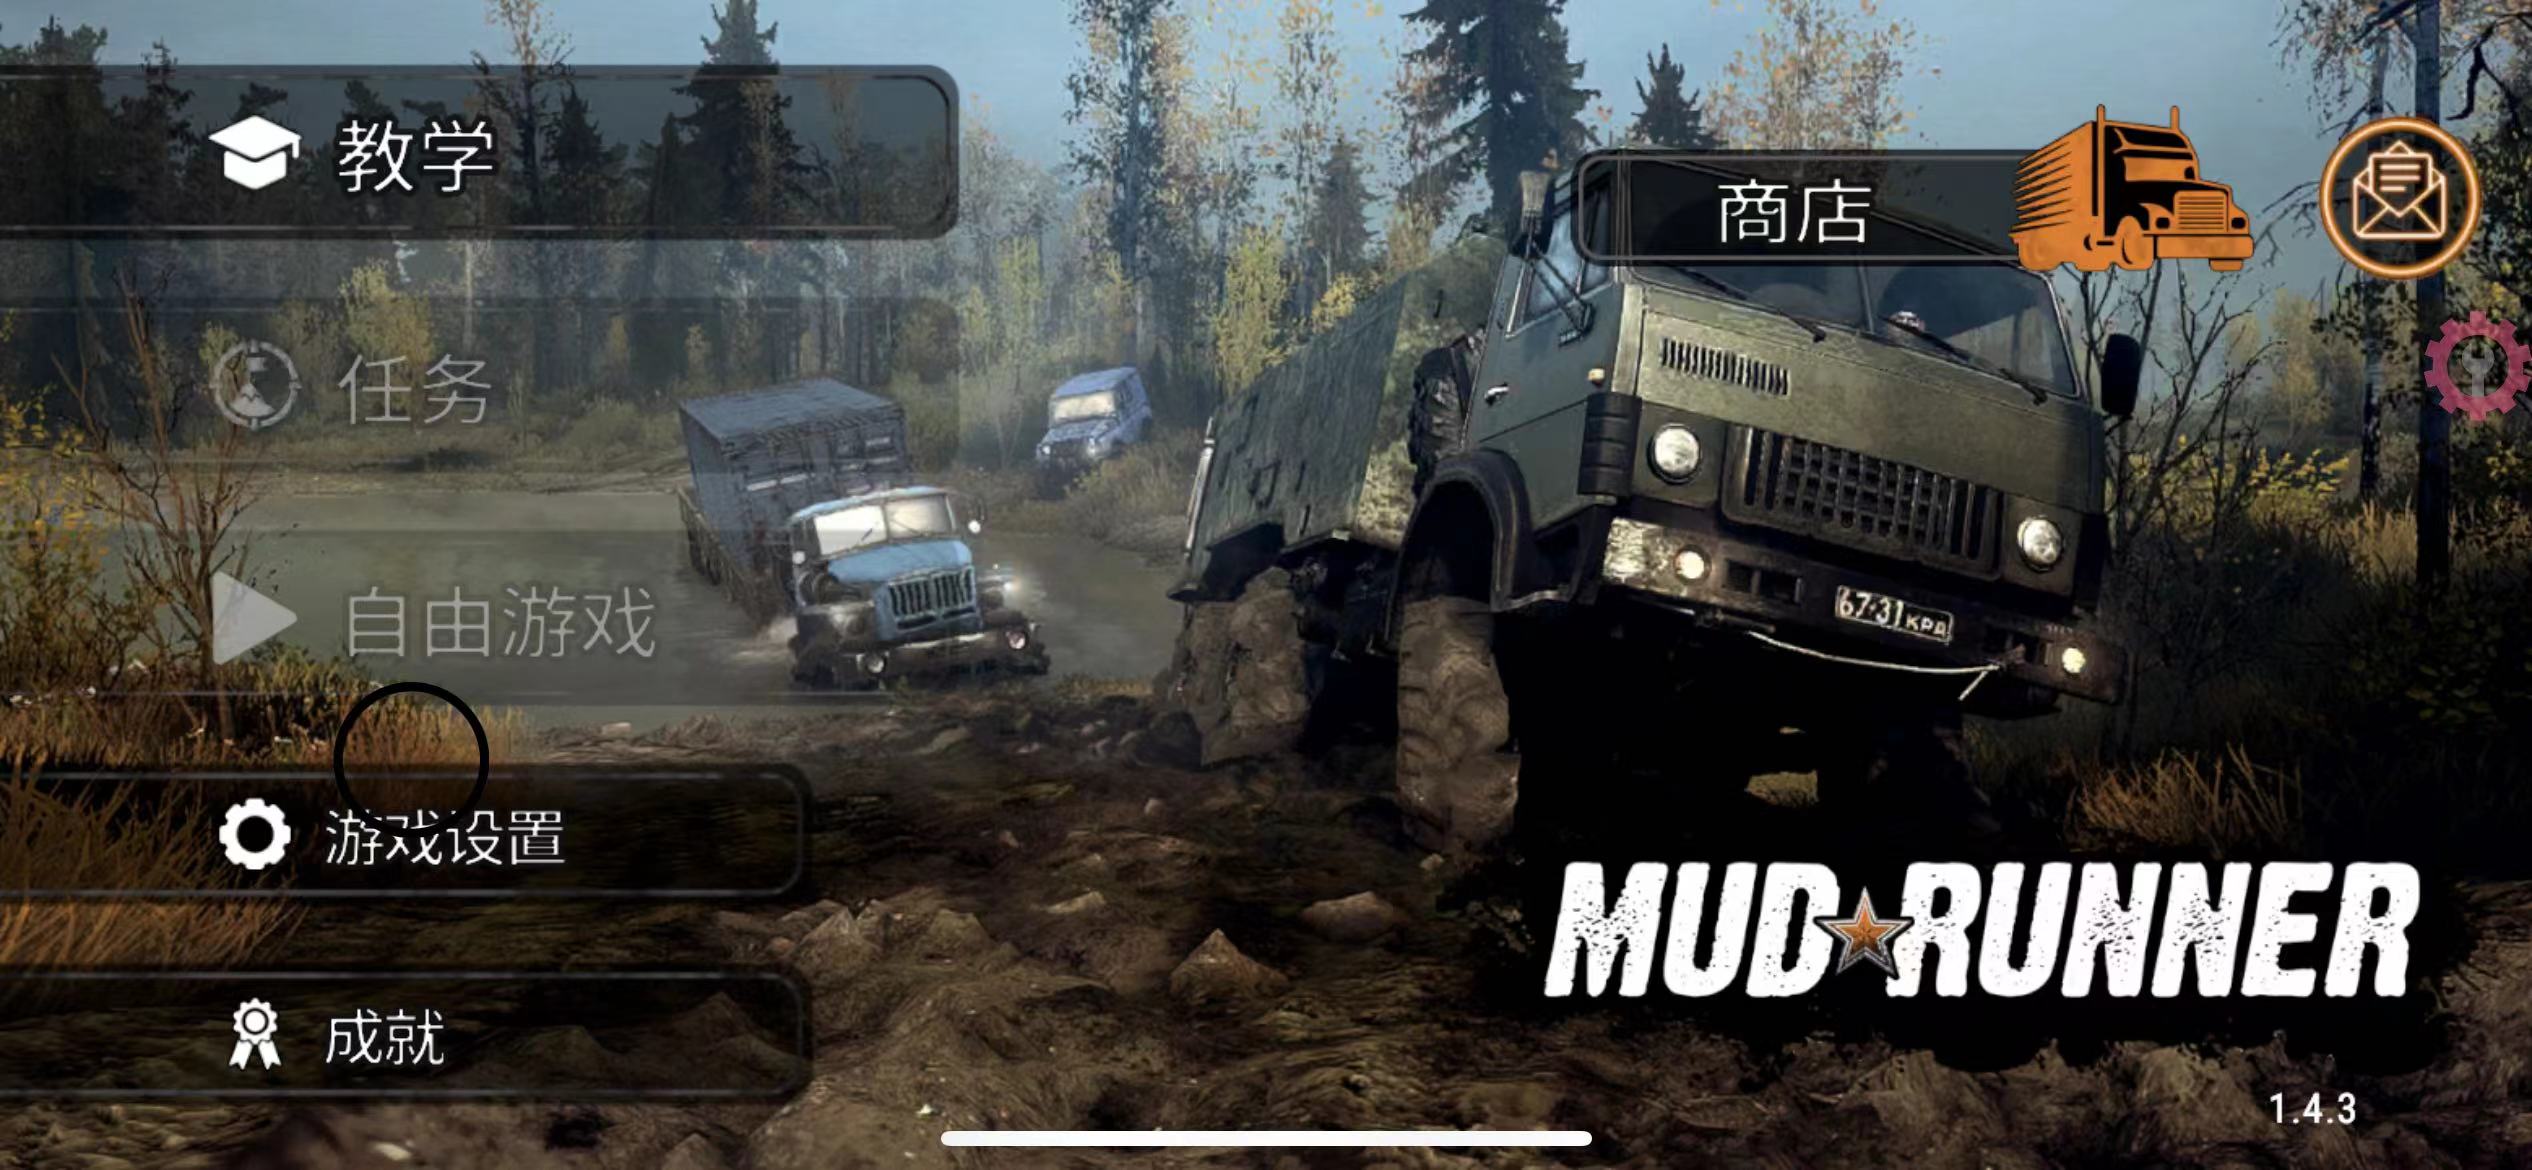 旋转轮胎:泥泞奔驰 MudRunner Mobile